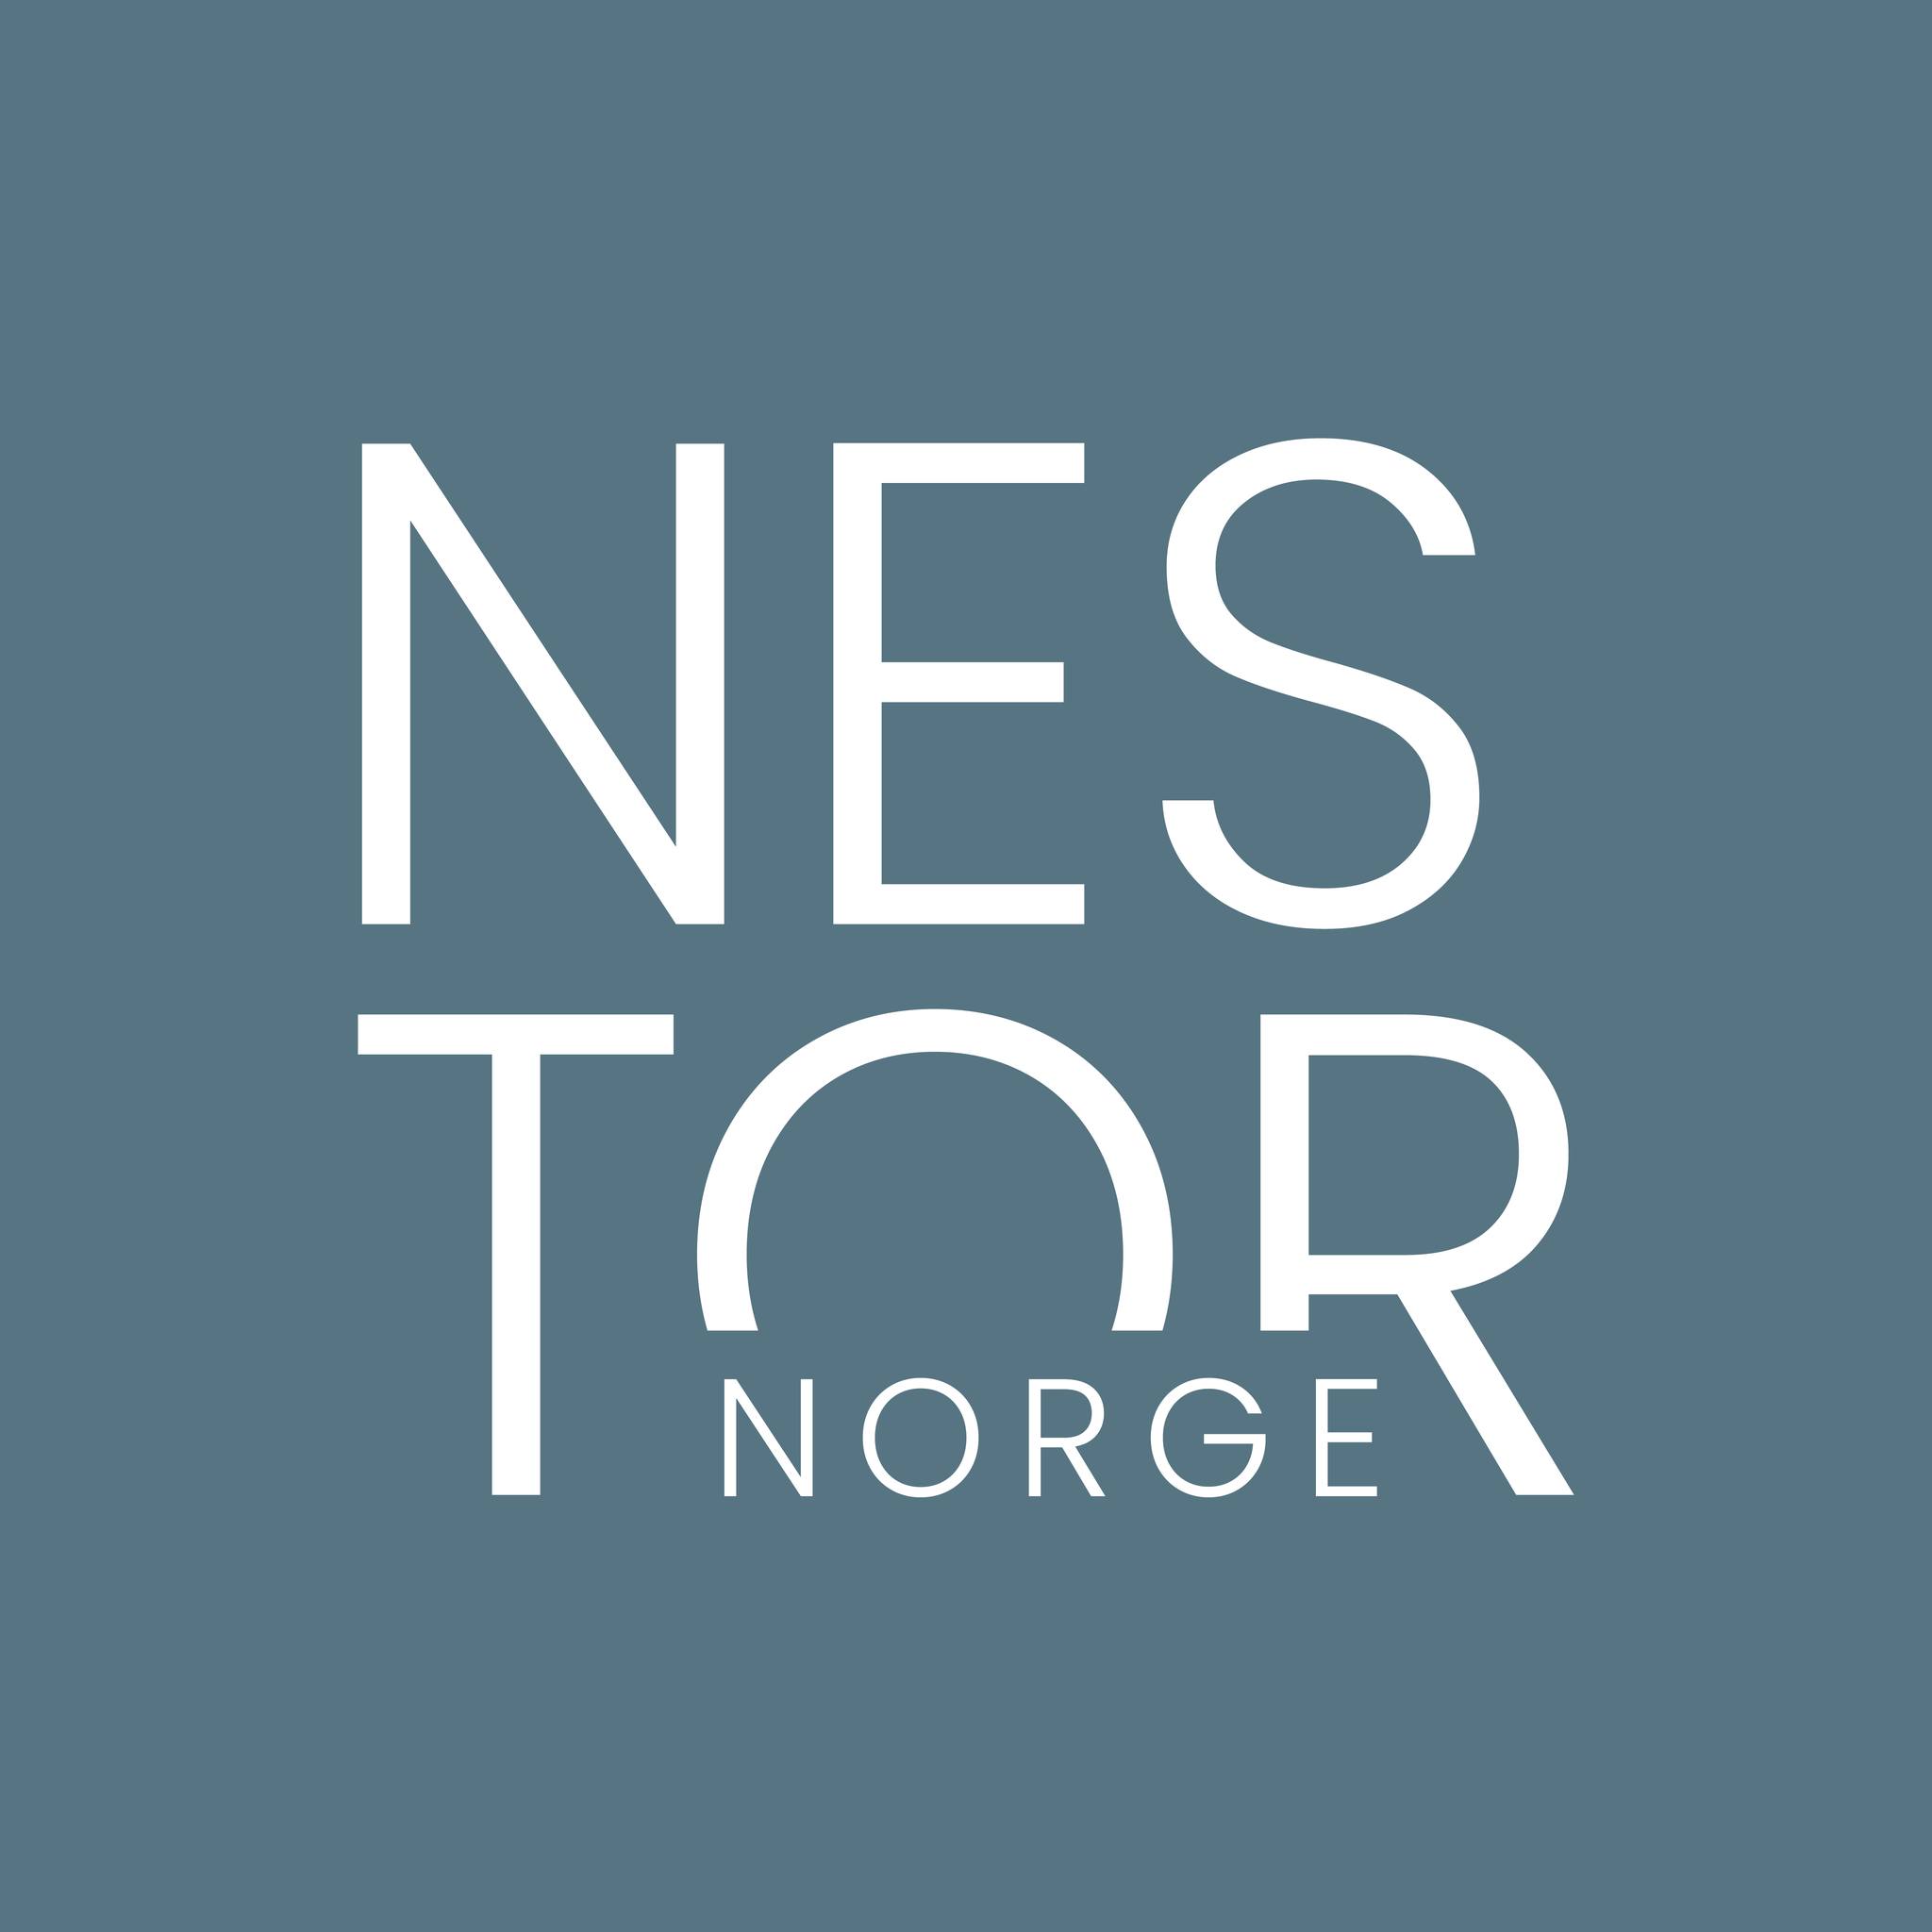 Nestor Norge